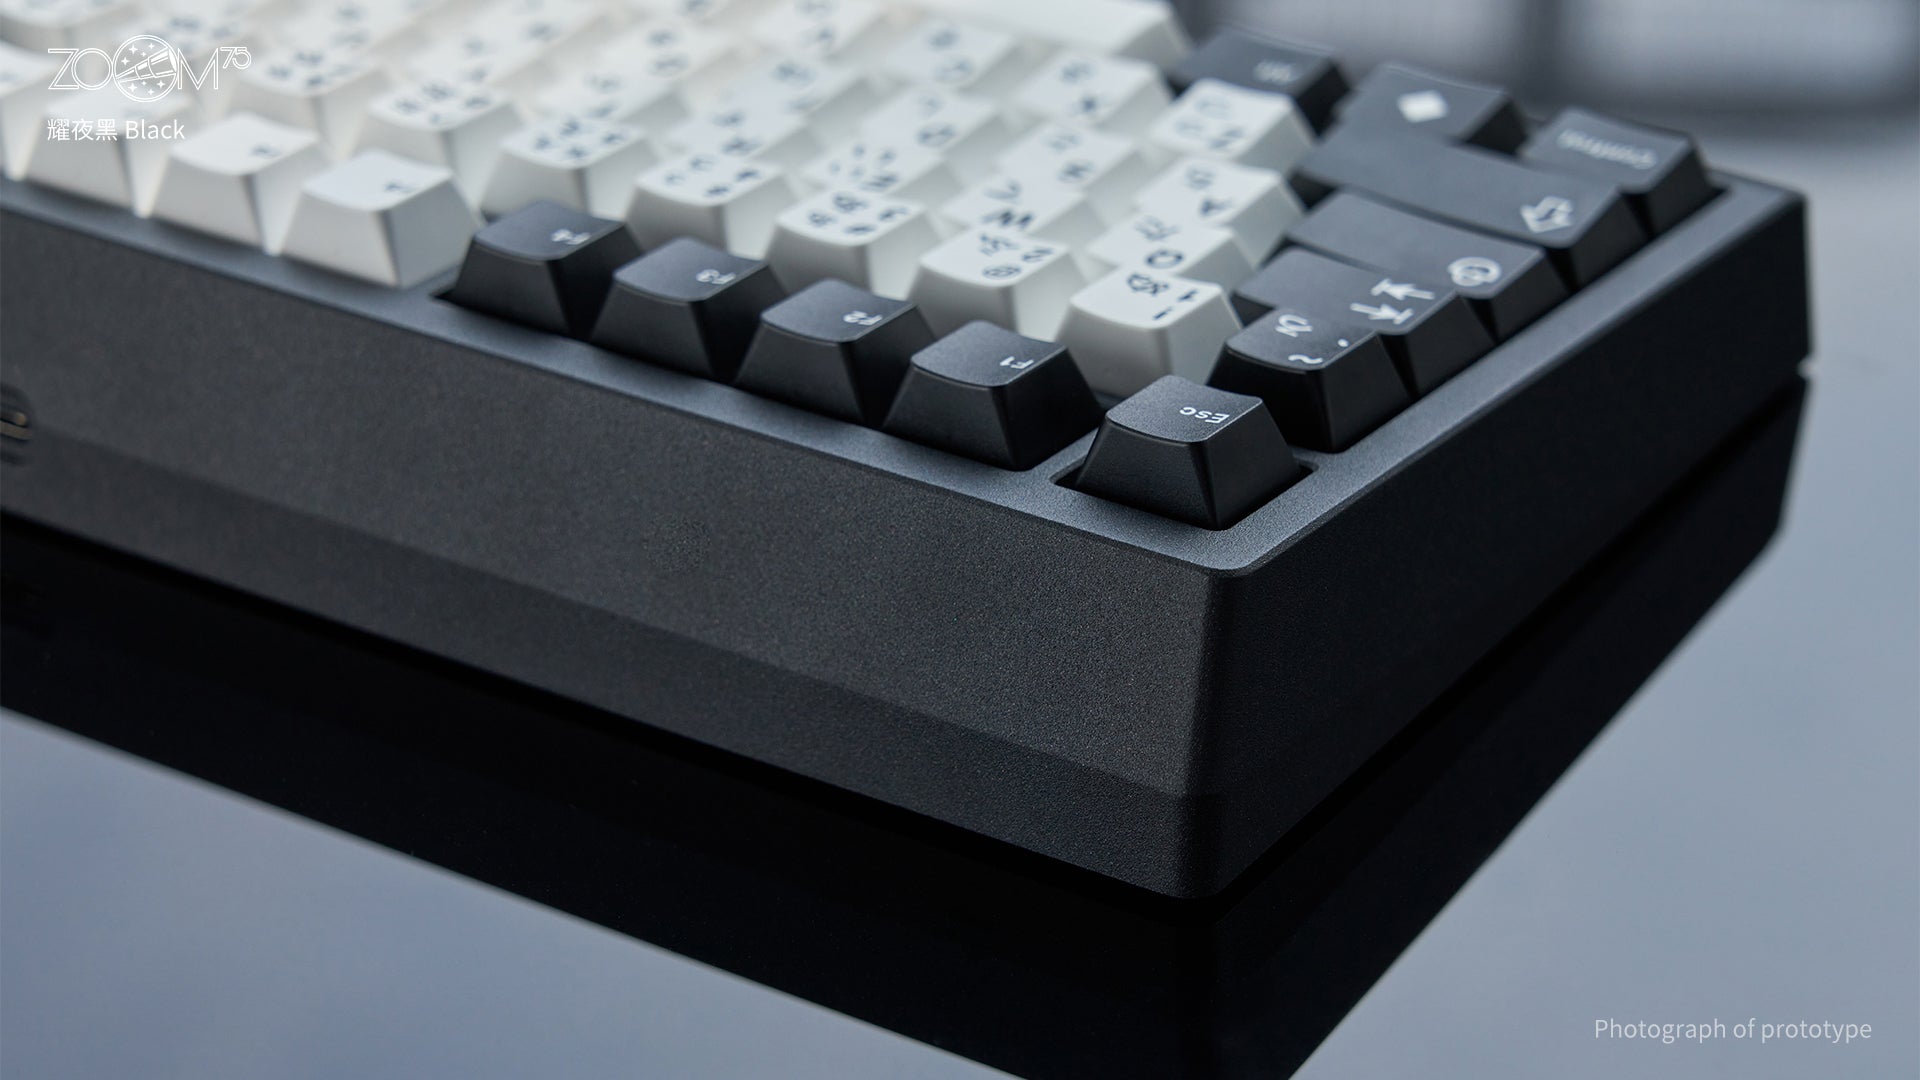 Zoom75 EE Keyboard - Black [Preorder]